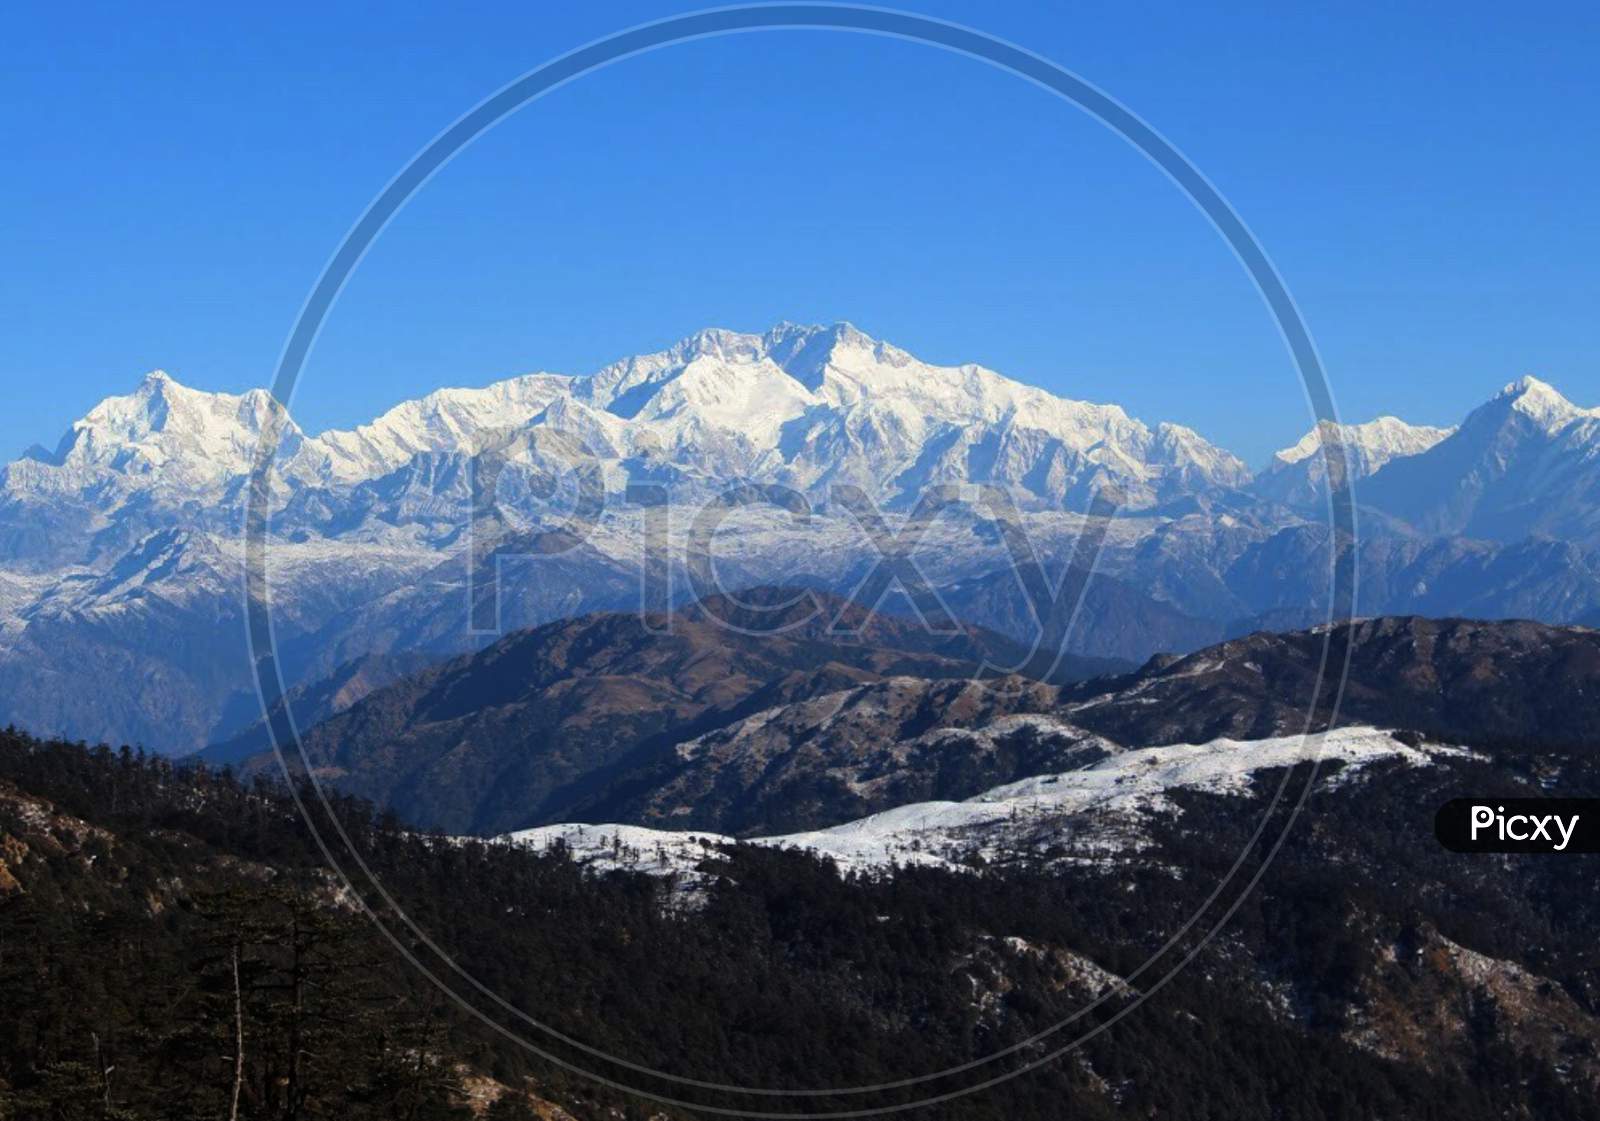 Mountain of the Himalaya range